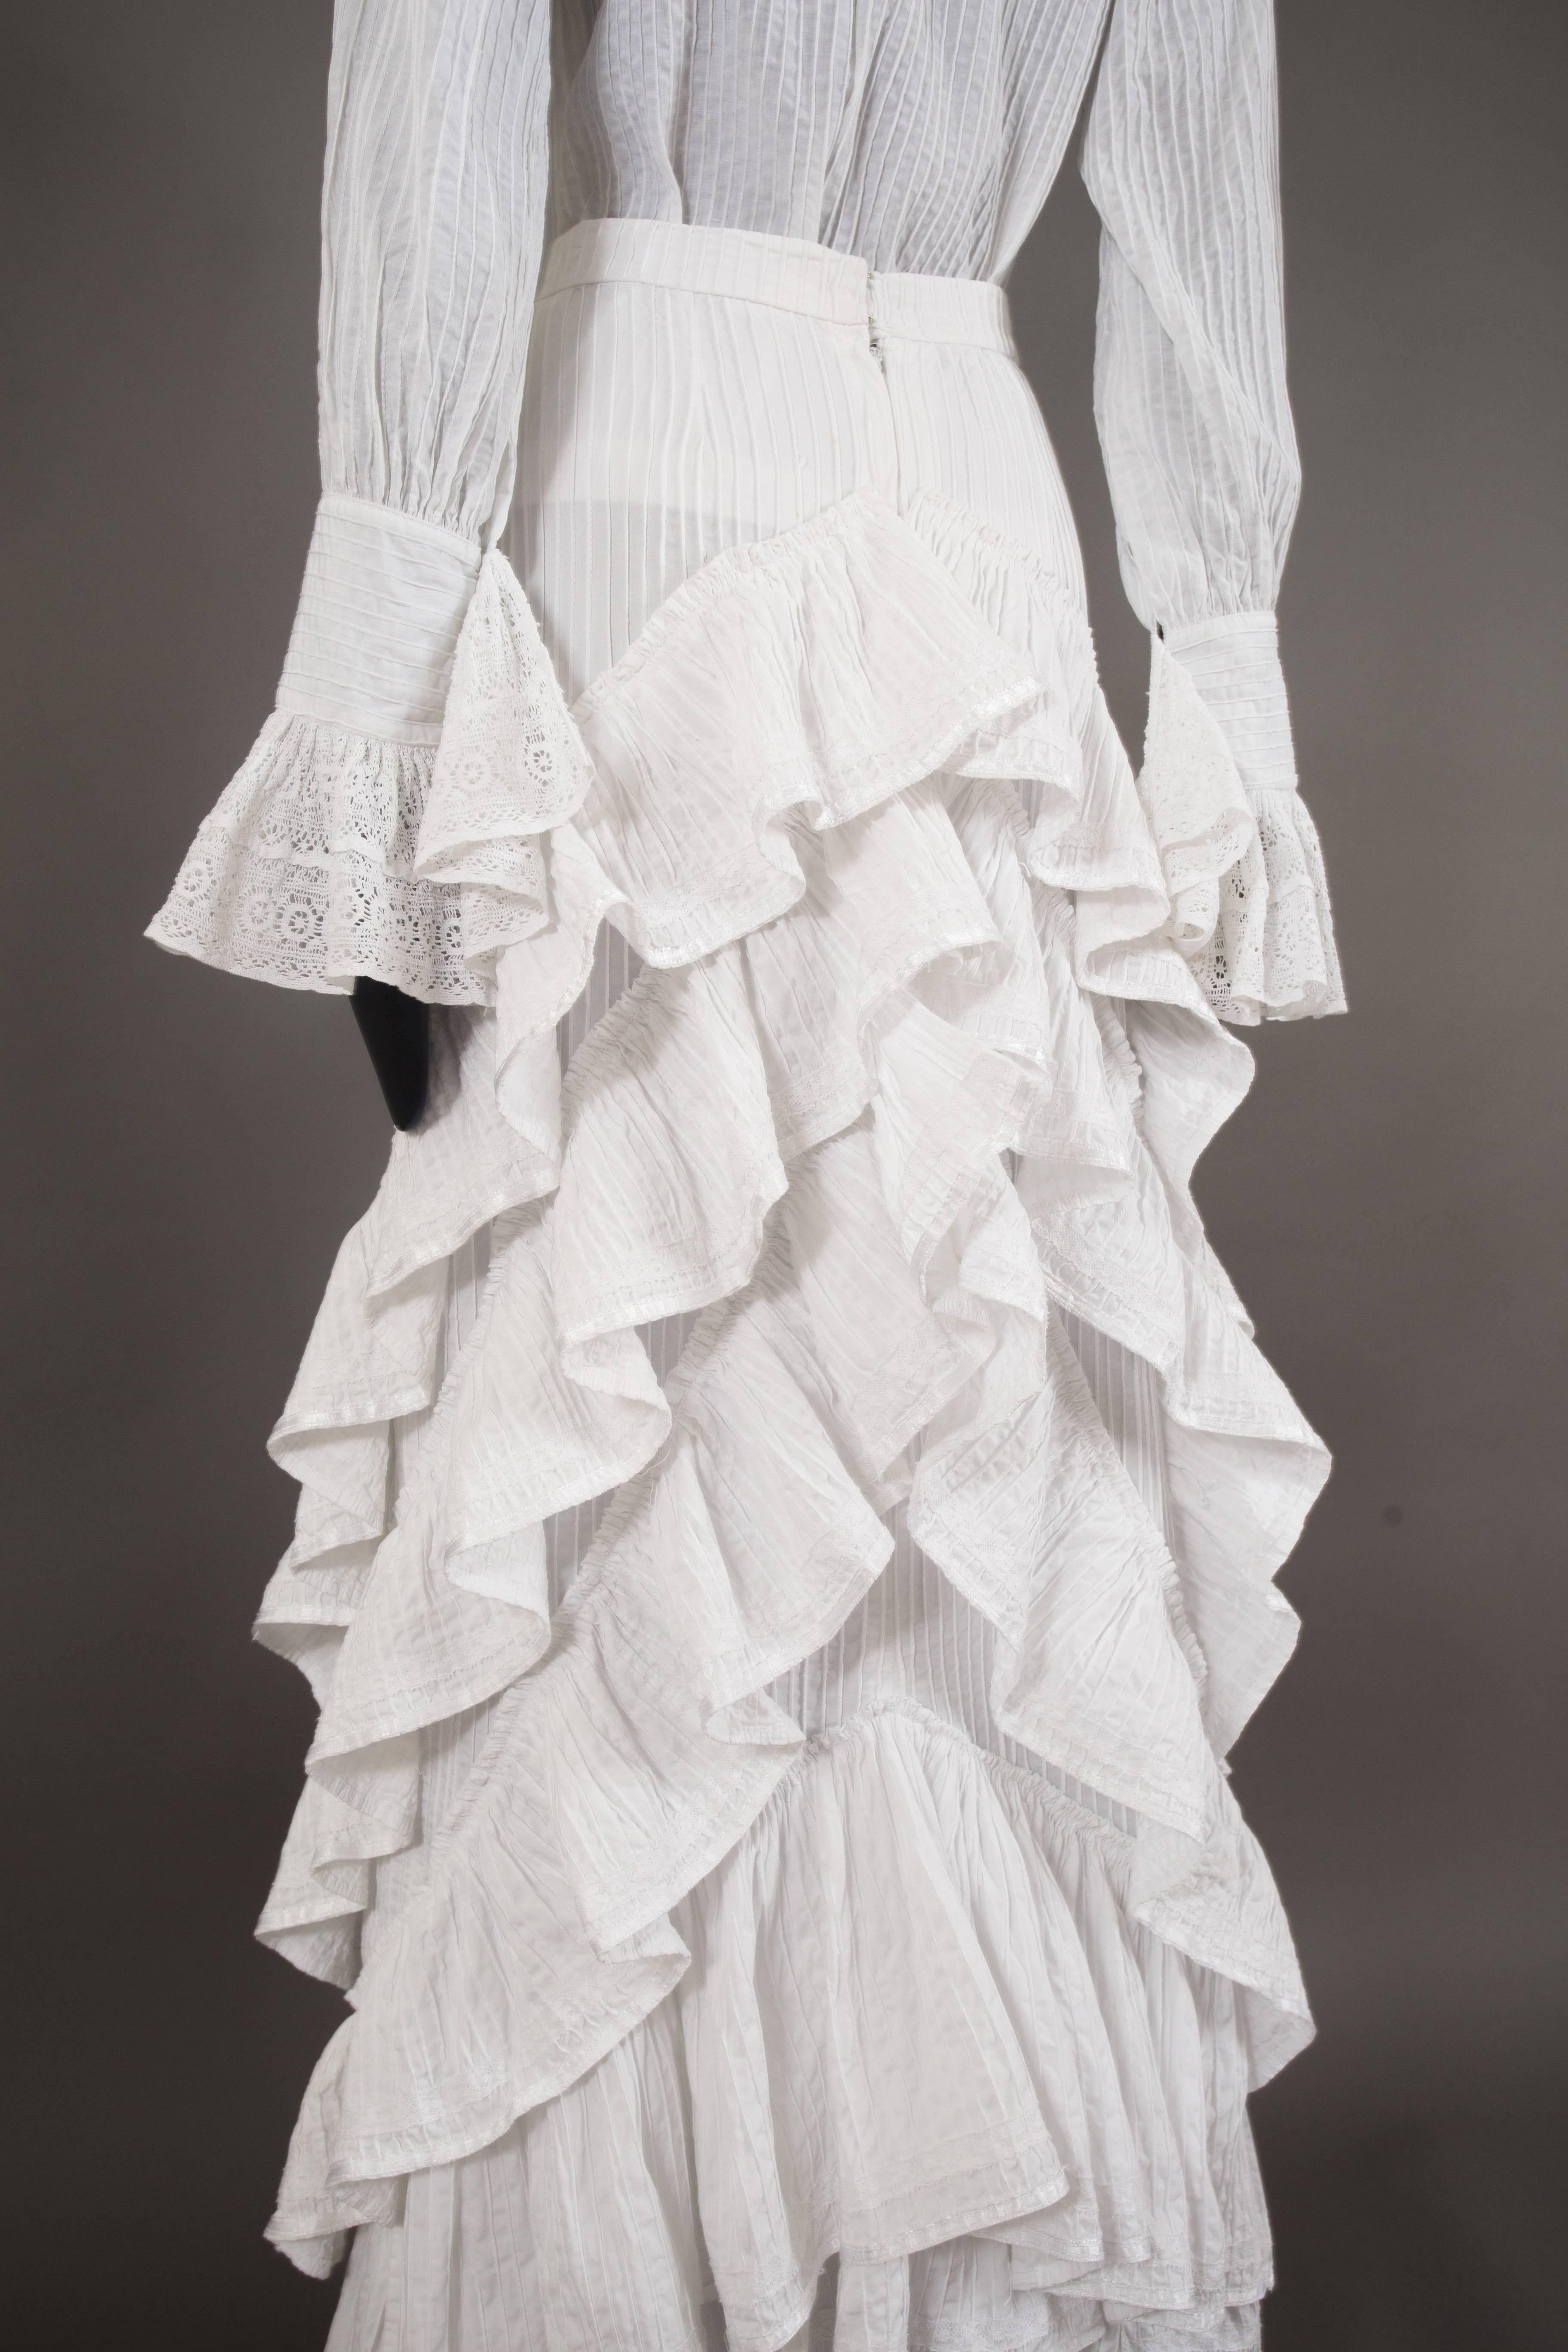 Gray Mexicana white pintucked cotton and lace ensemble, circa 1960